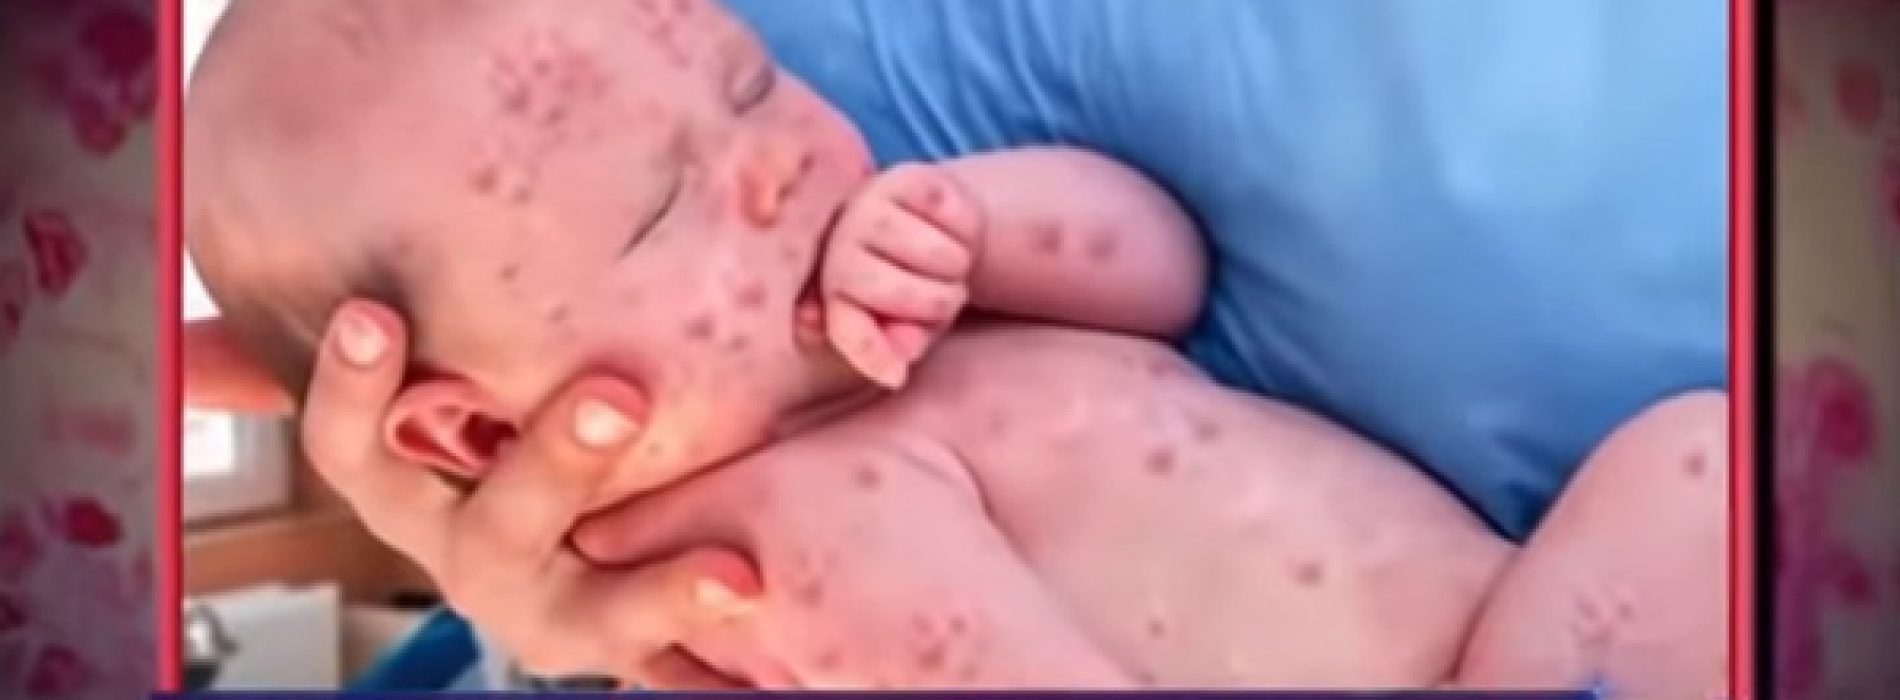 Foto’s van baby besmet met mazelen, gefotoshopt door NBC News om massahysterie op te dringen en naleving van vaccins te eisen